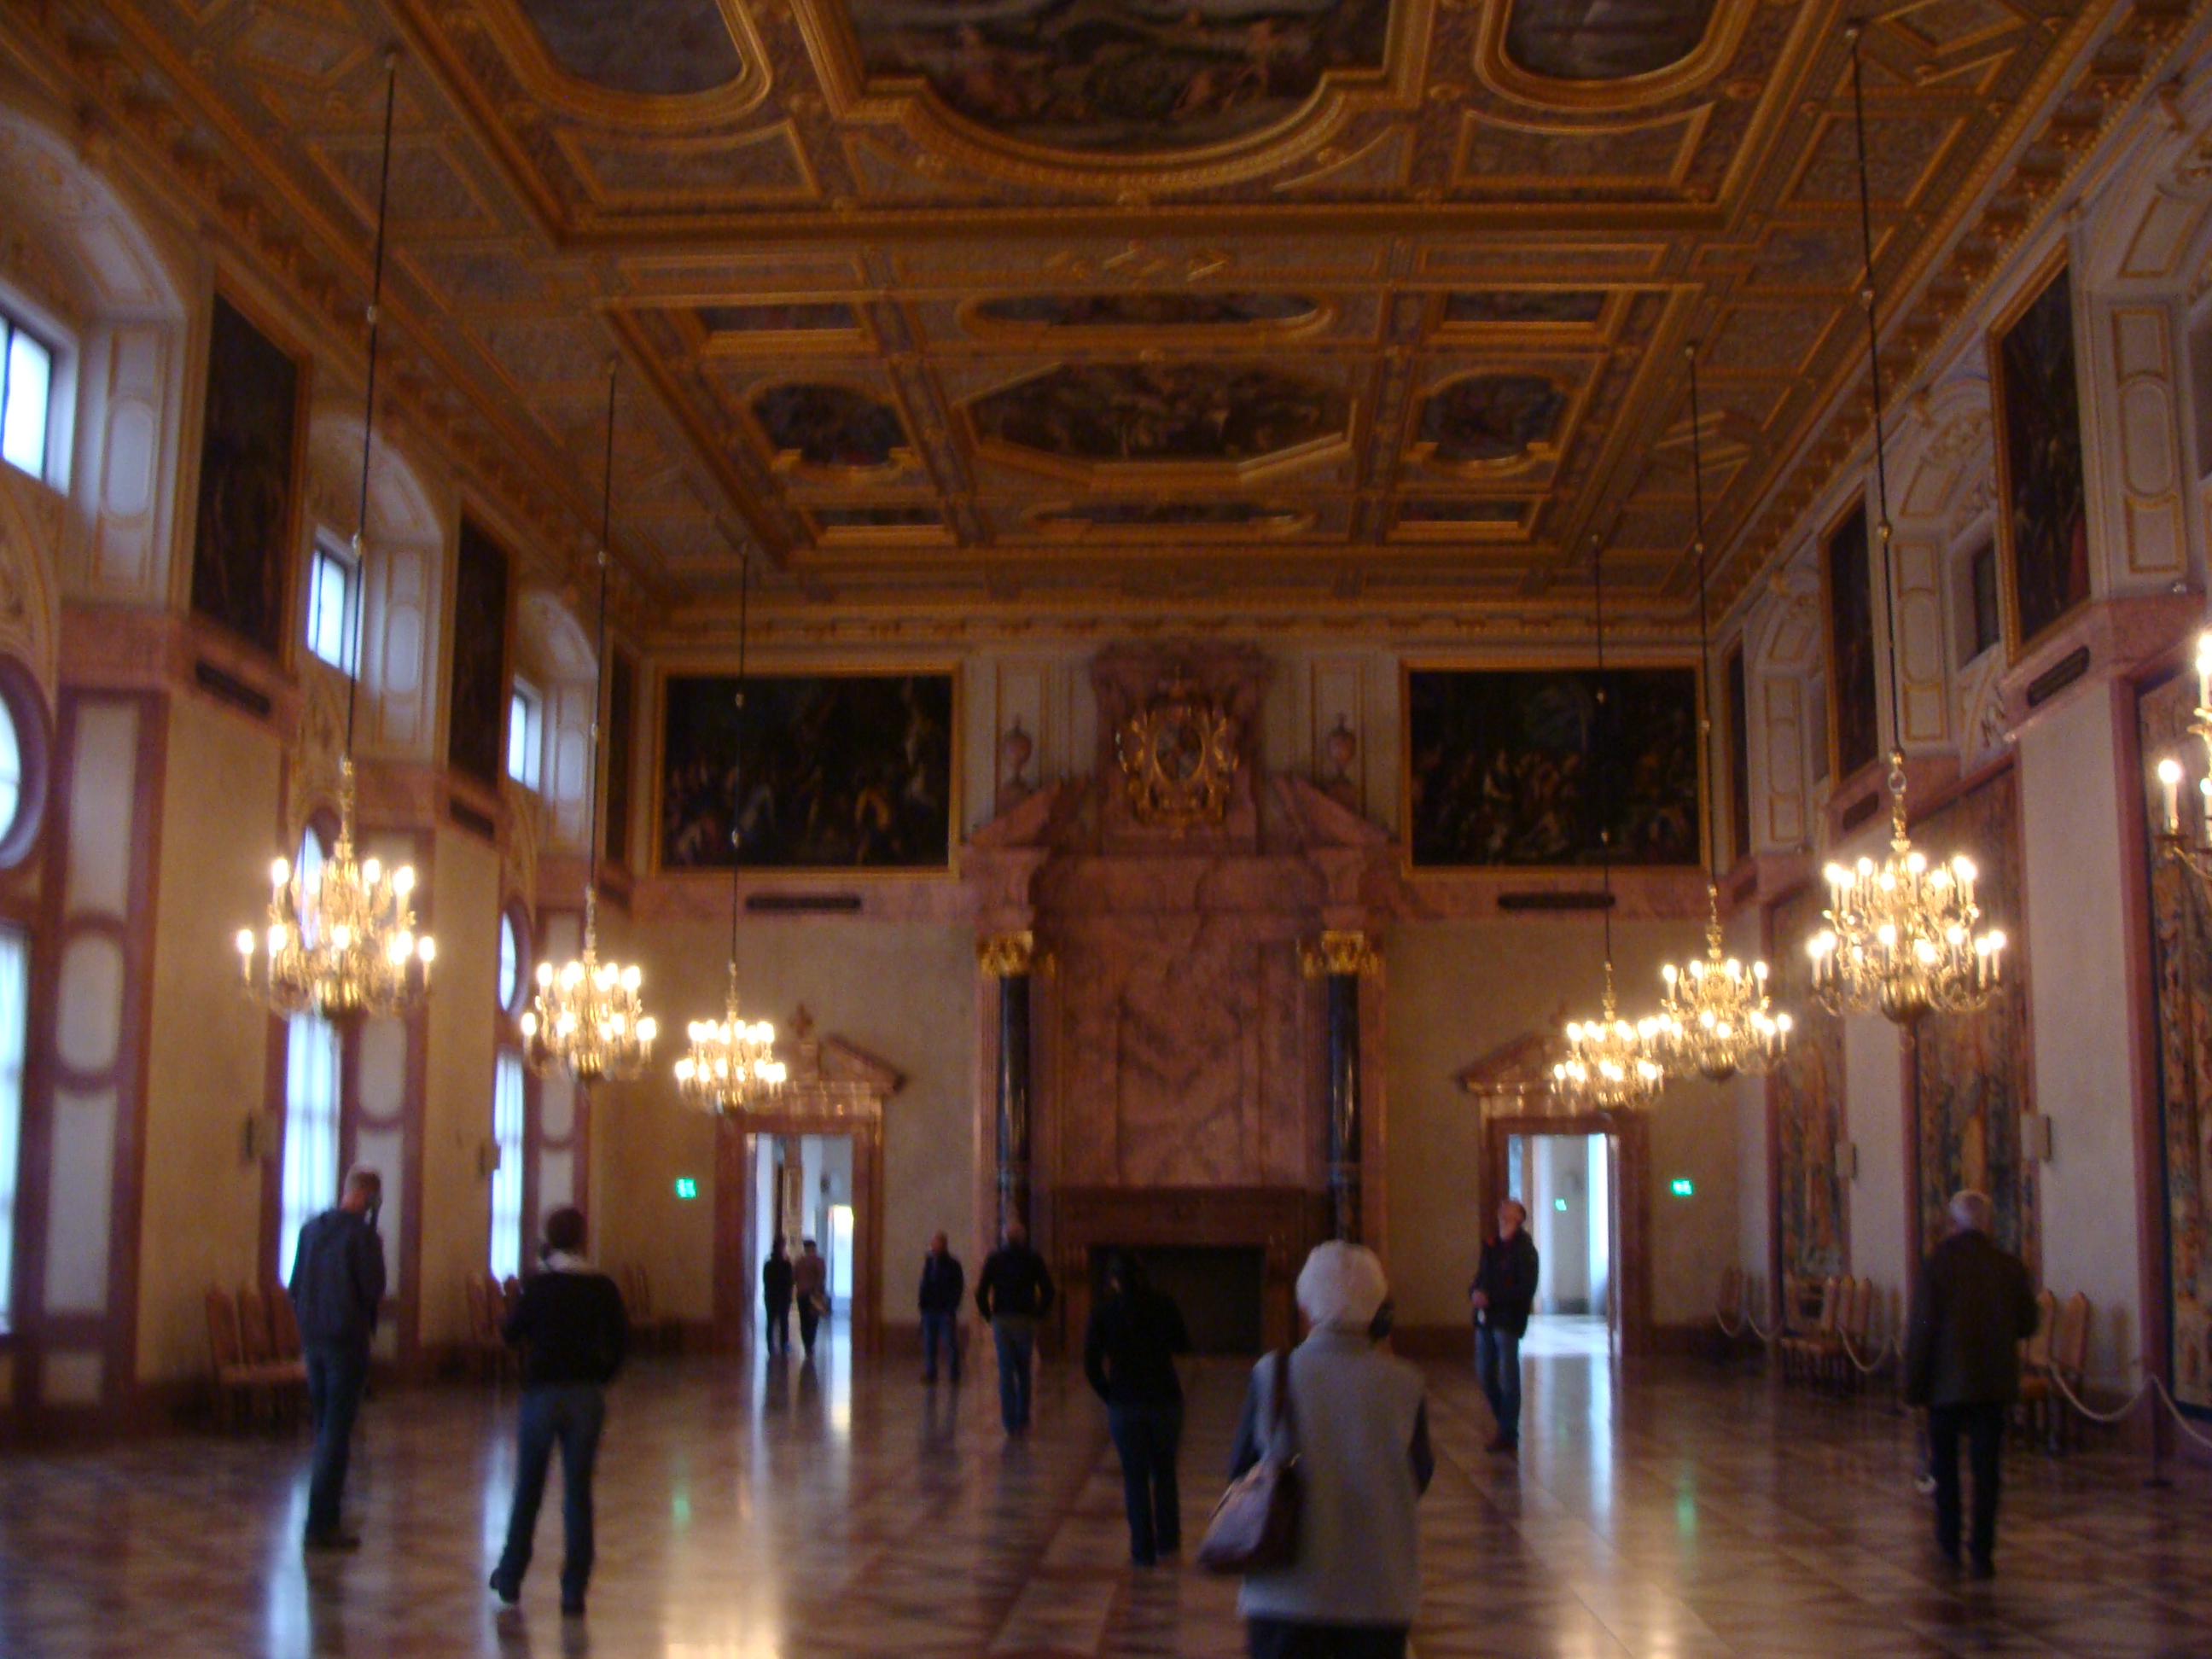 Alemania Munich Residenz Hall Imperial